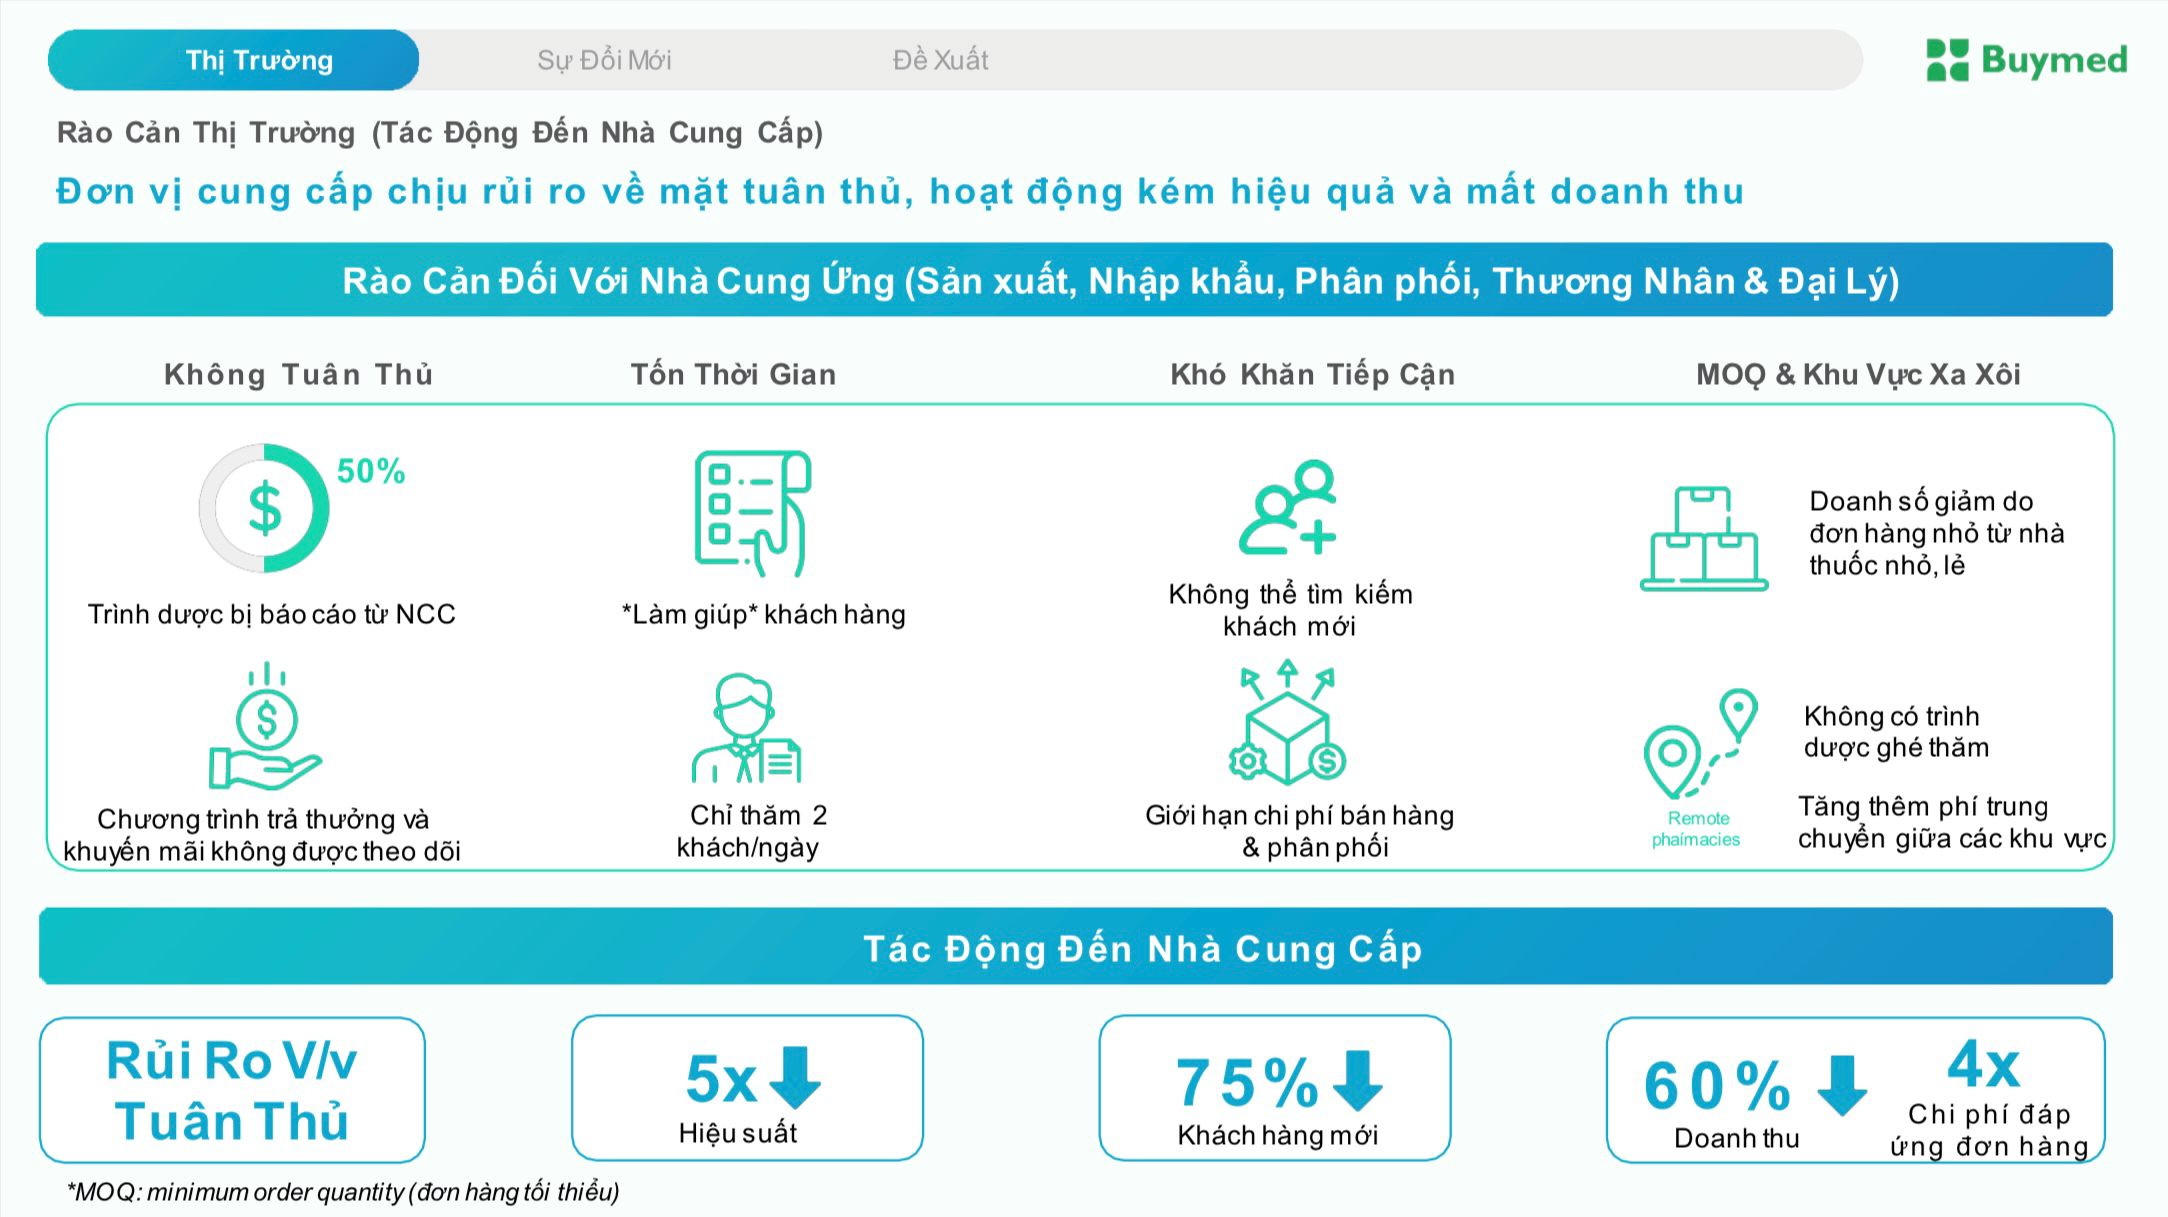 Chuyển đổi số trong doanh nghiệp ở Việt Nam: Kinh nghiệm từ BuyMed trong ngành dược phẩm